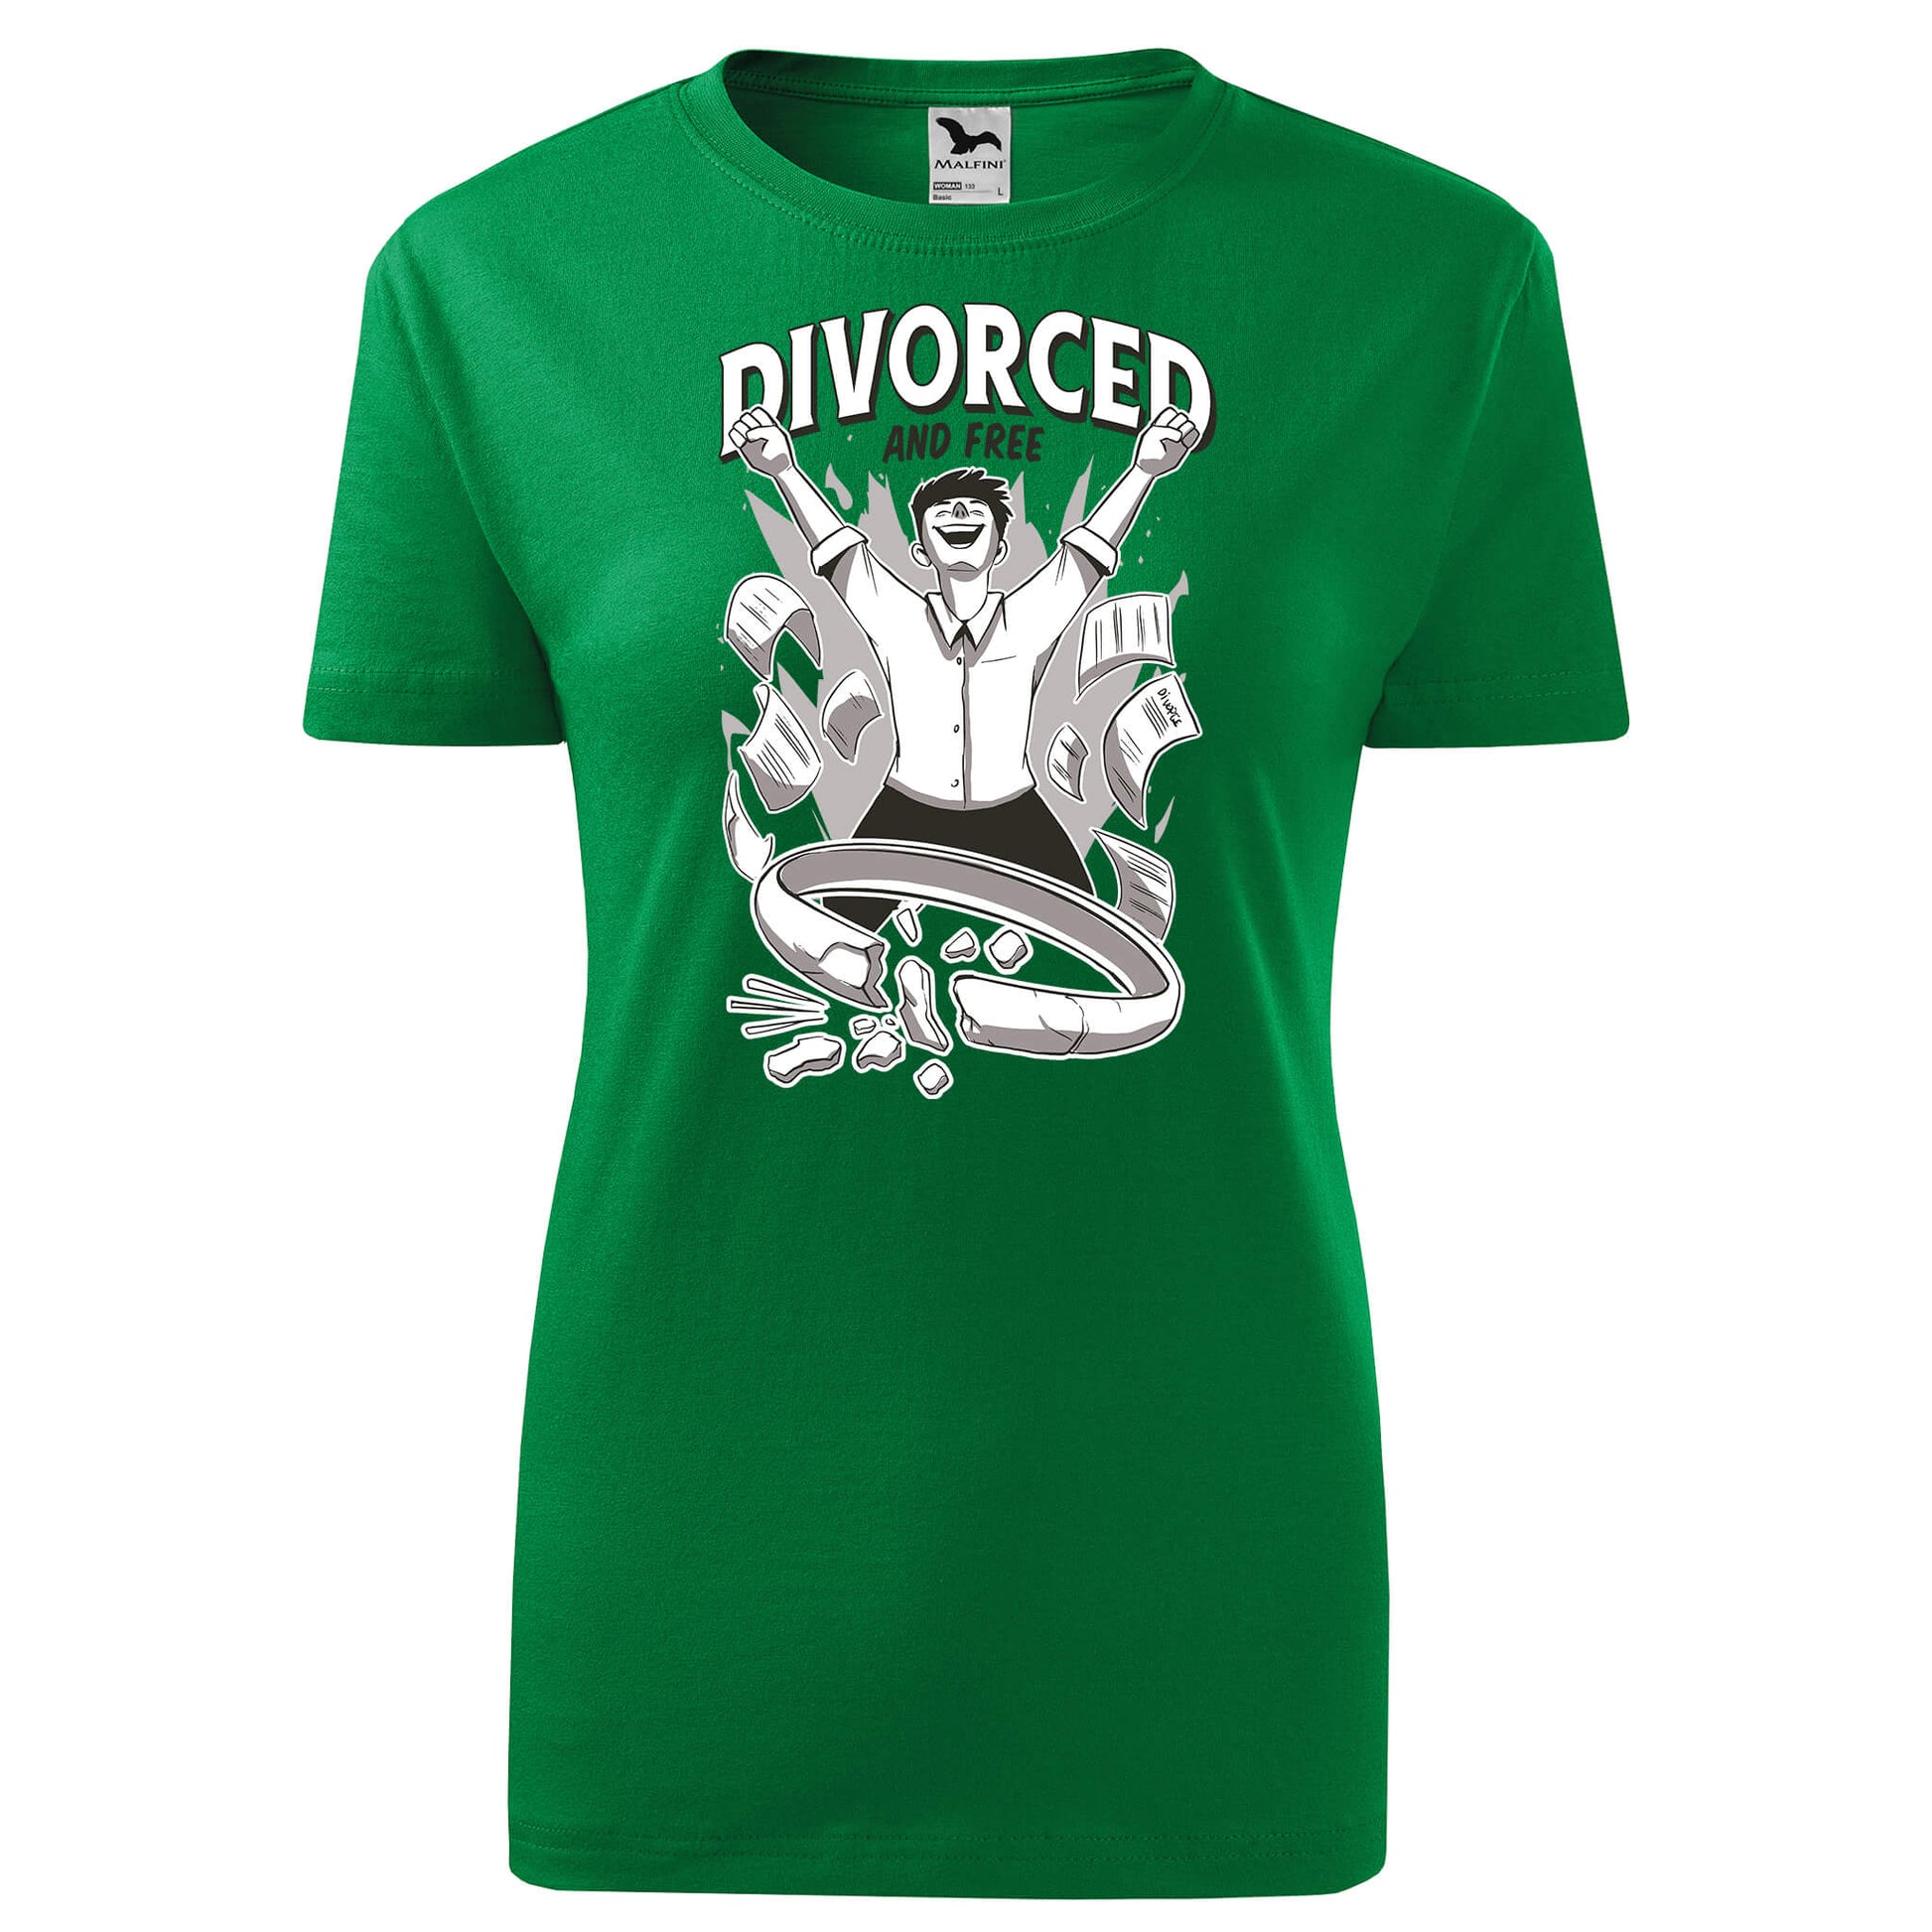 Divorced free t-shirt - rvdesignprint